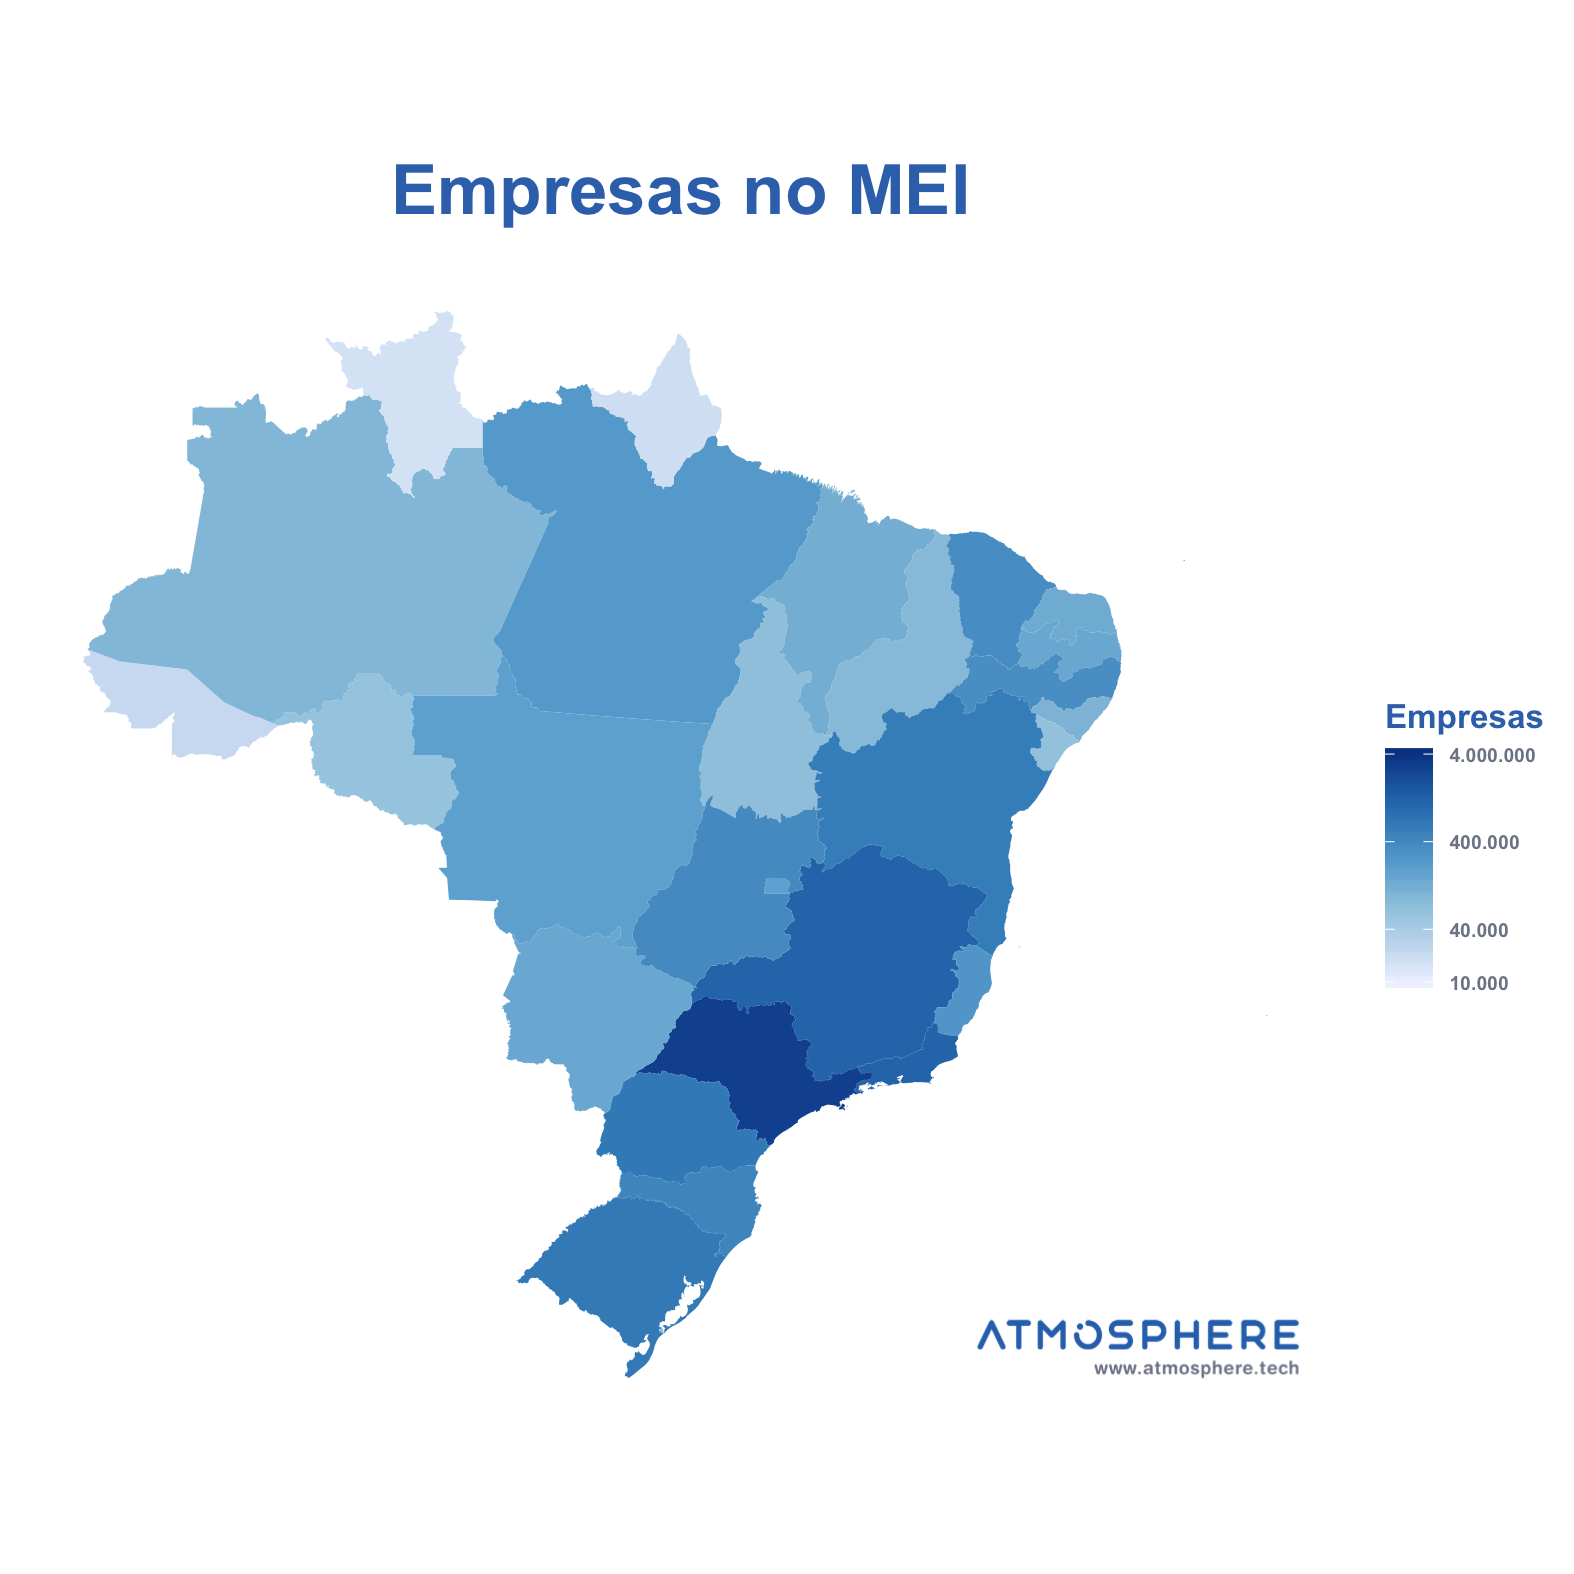 Atmosphere Empresas no MEI por Estado no Brasil